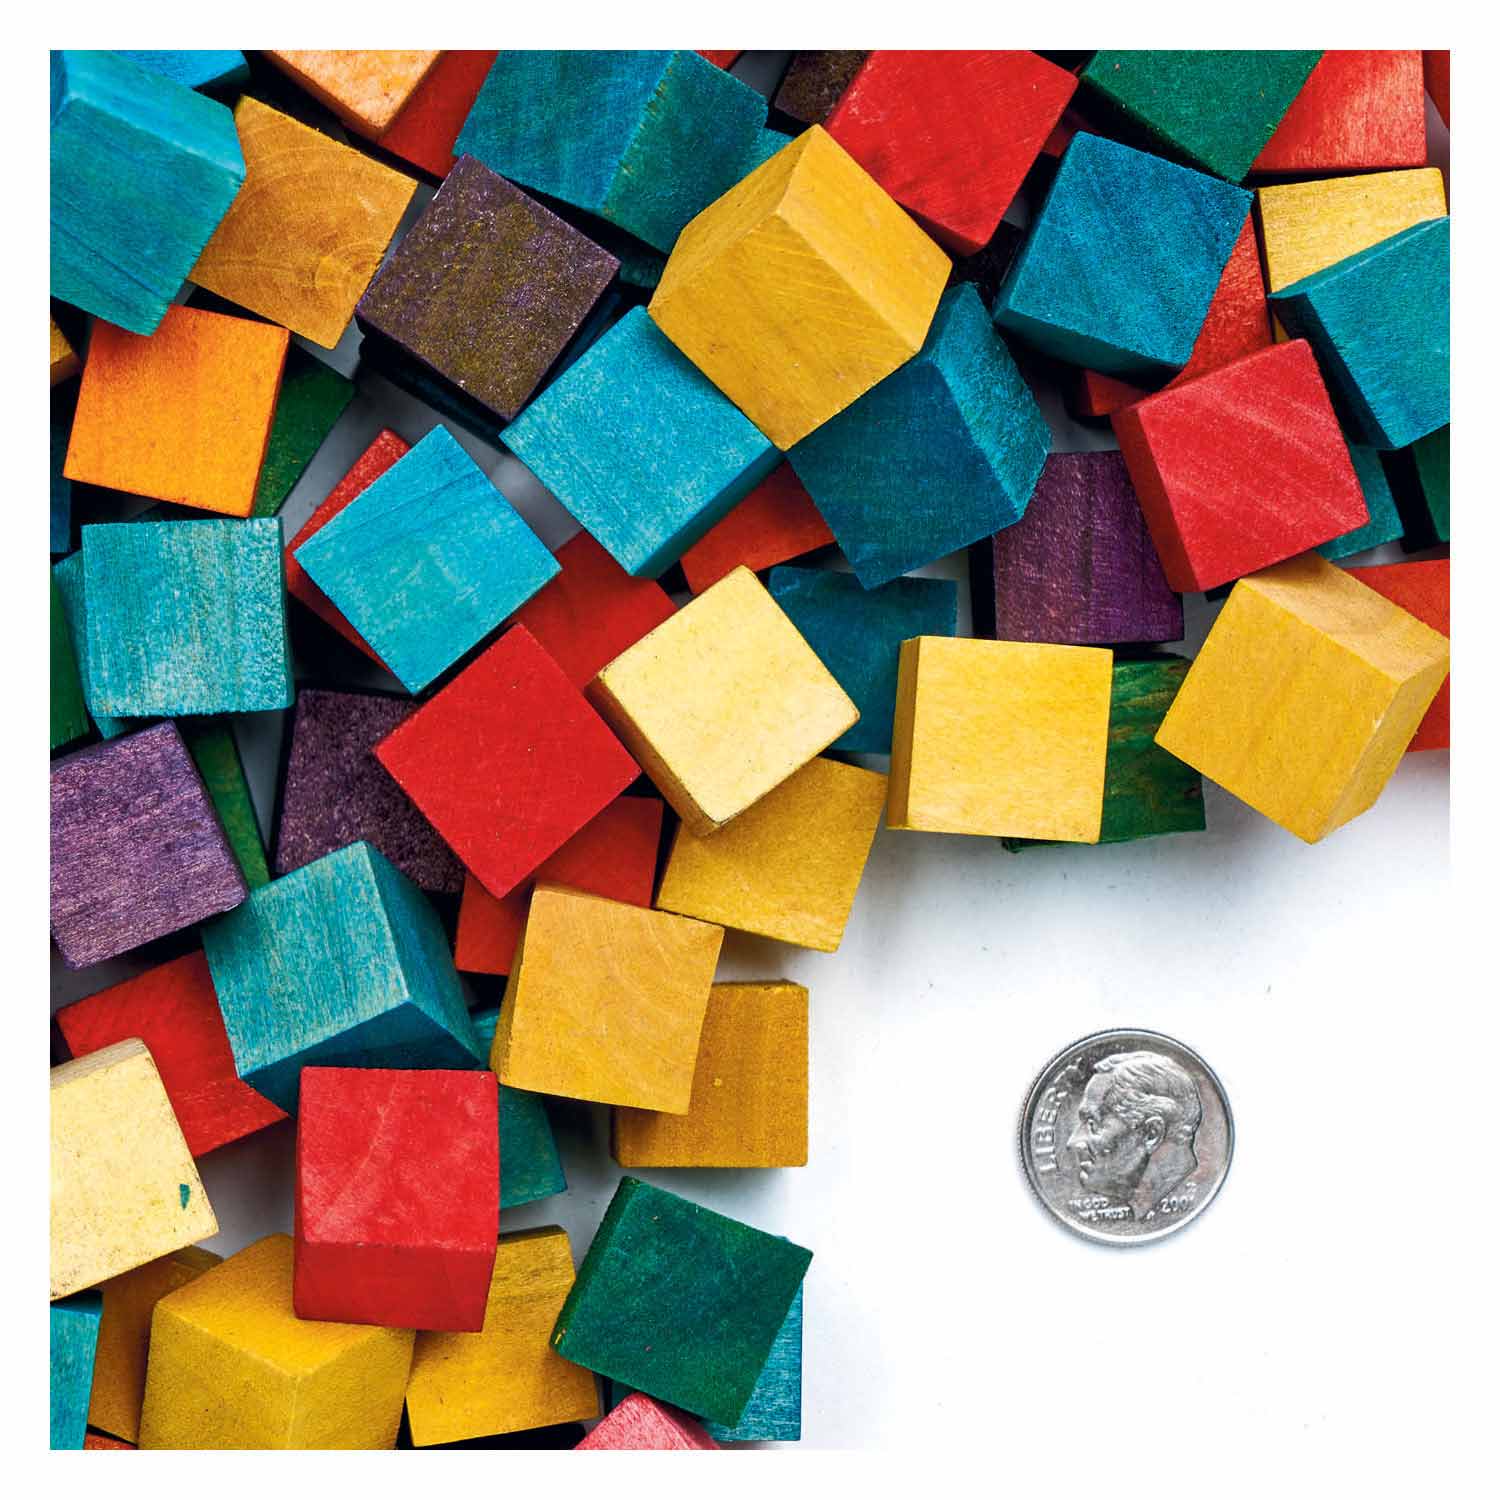 Colorations - Blocs cubes en bois colorés, 196 pièces.